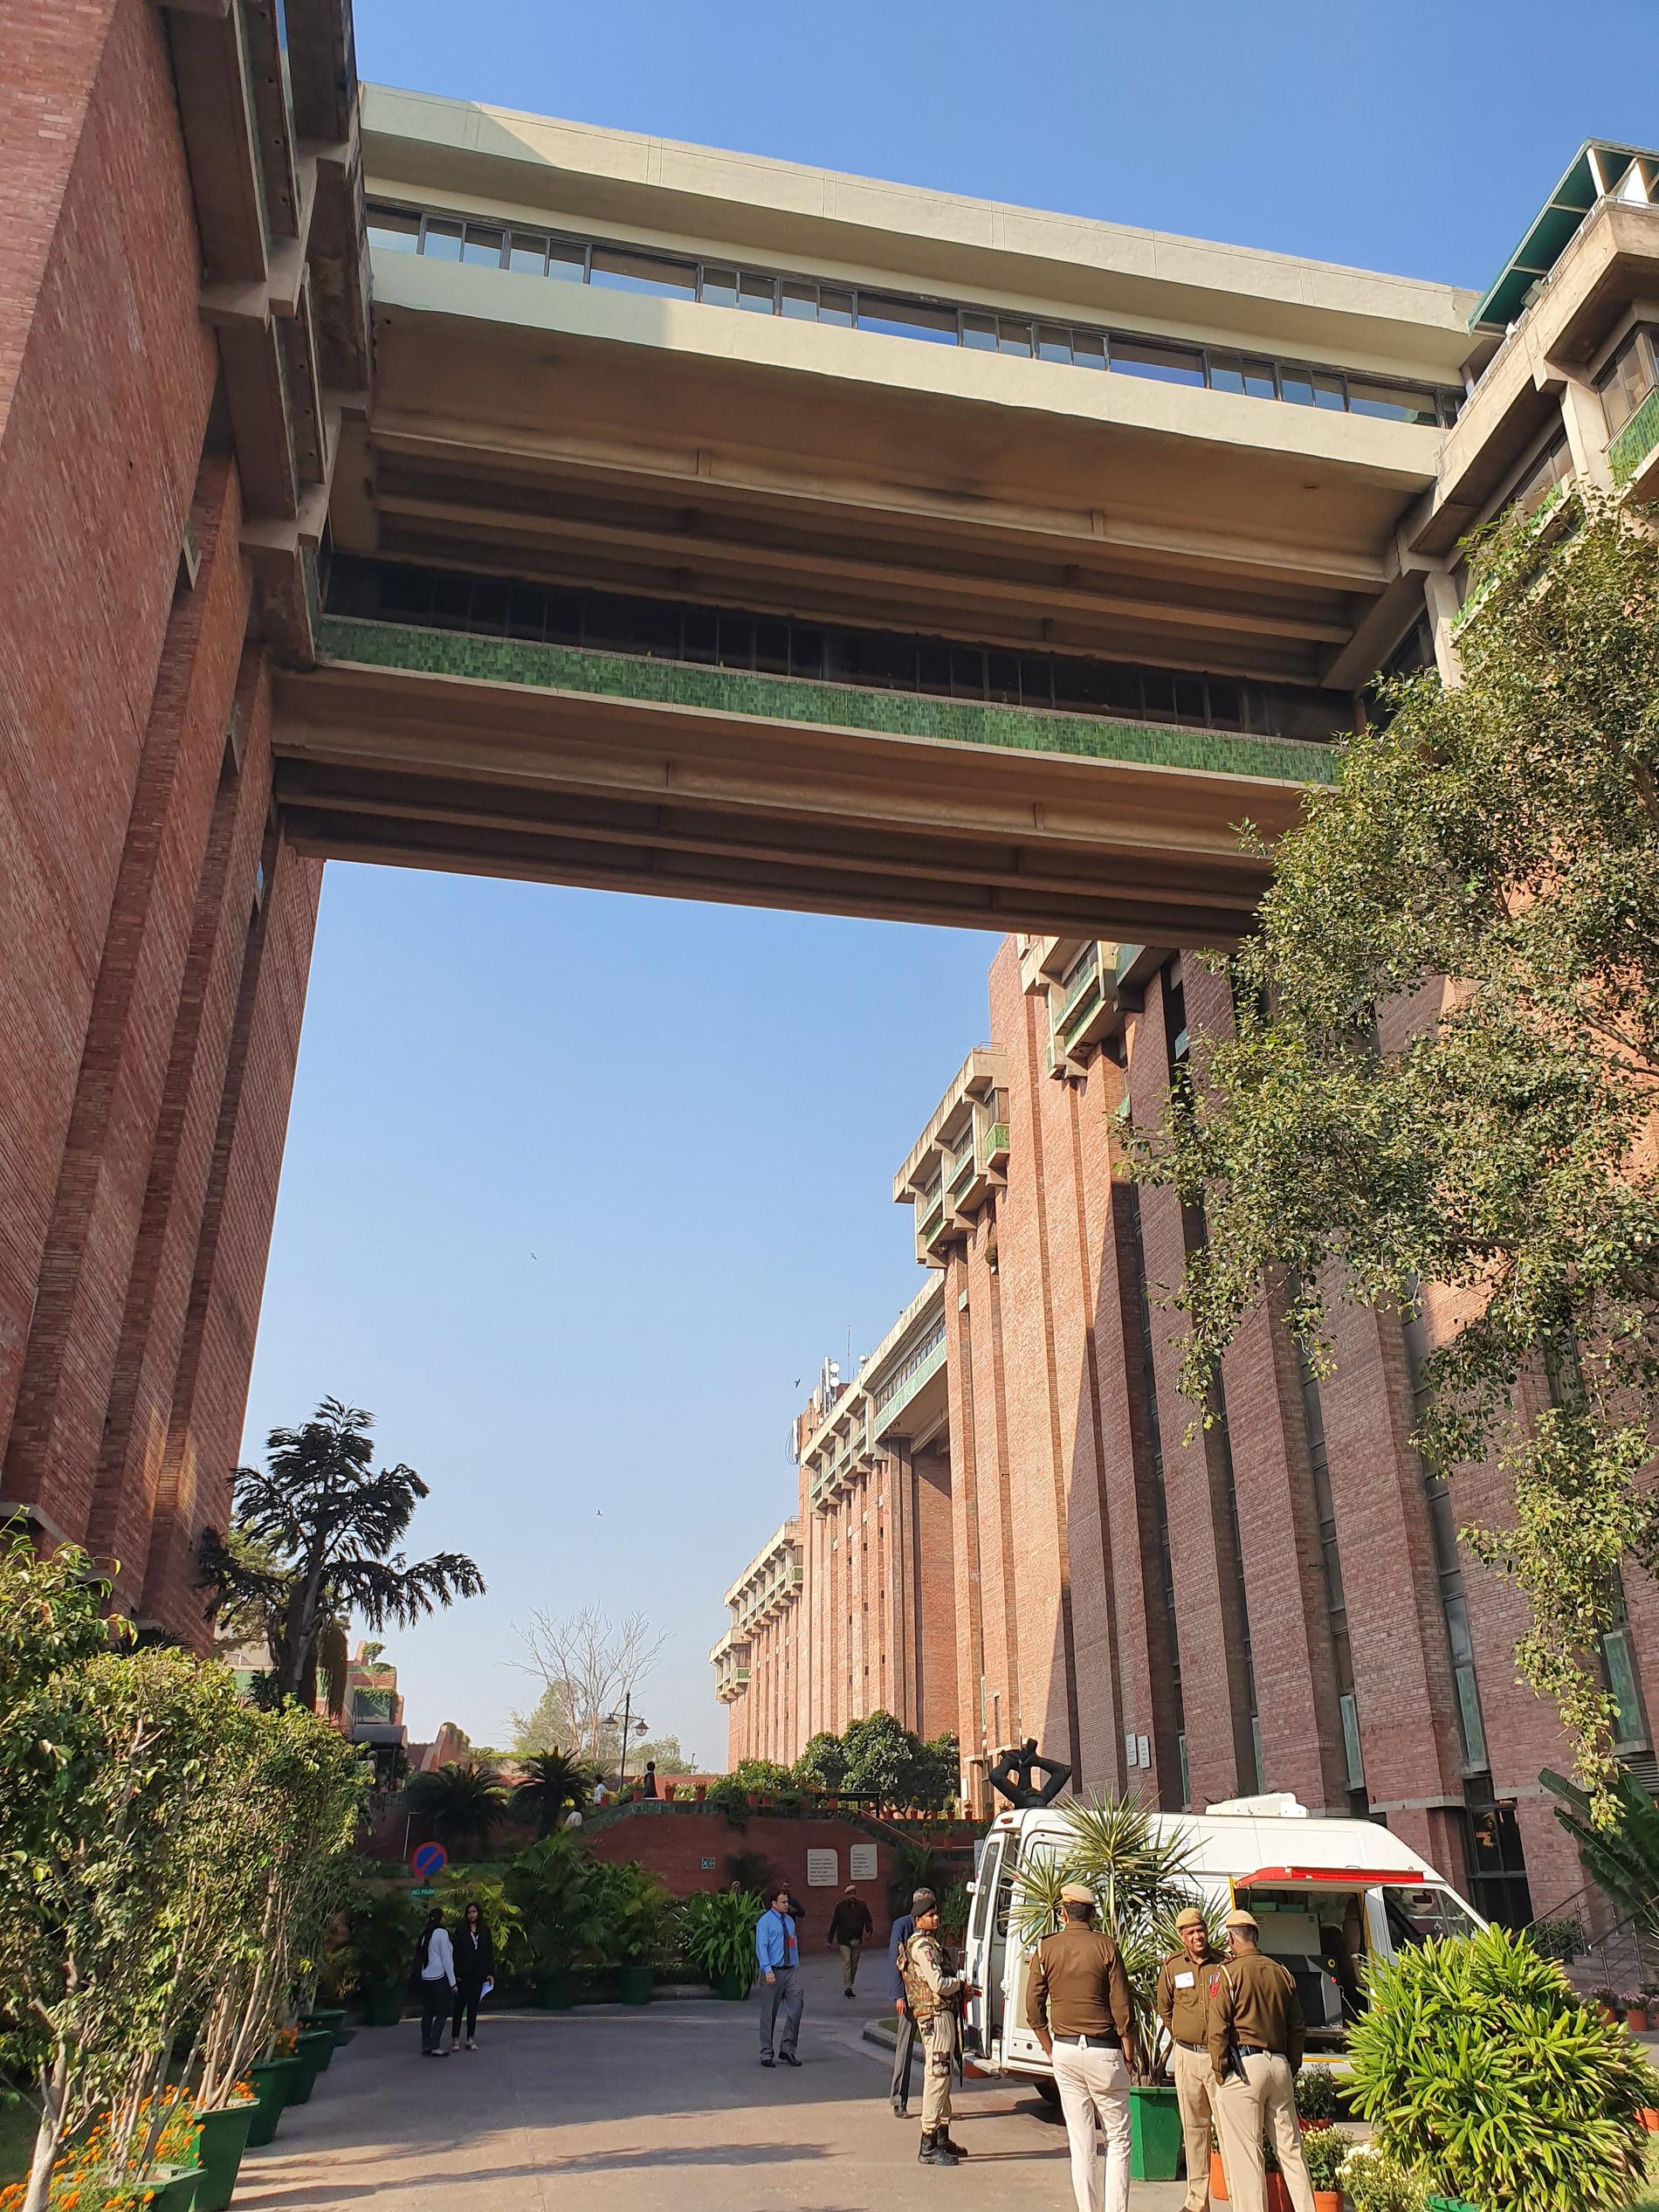 India Habitat Centre i New Delhi. Rundabortssamtalet med kungen hölls högst upp i huset på terrassen.